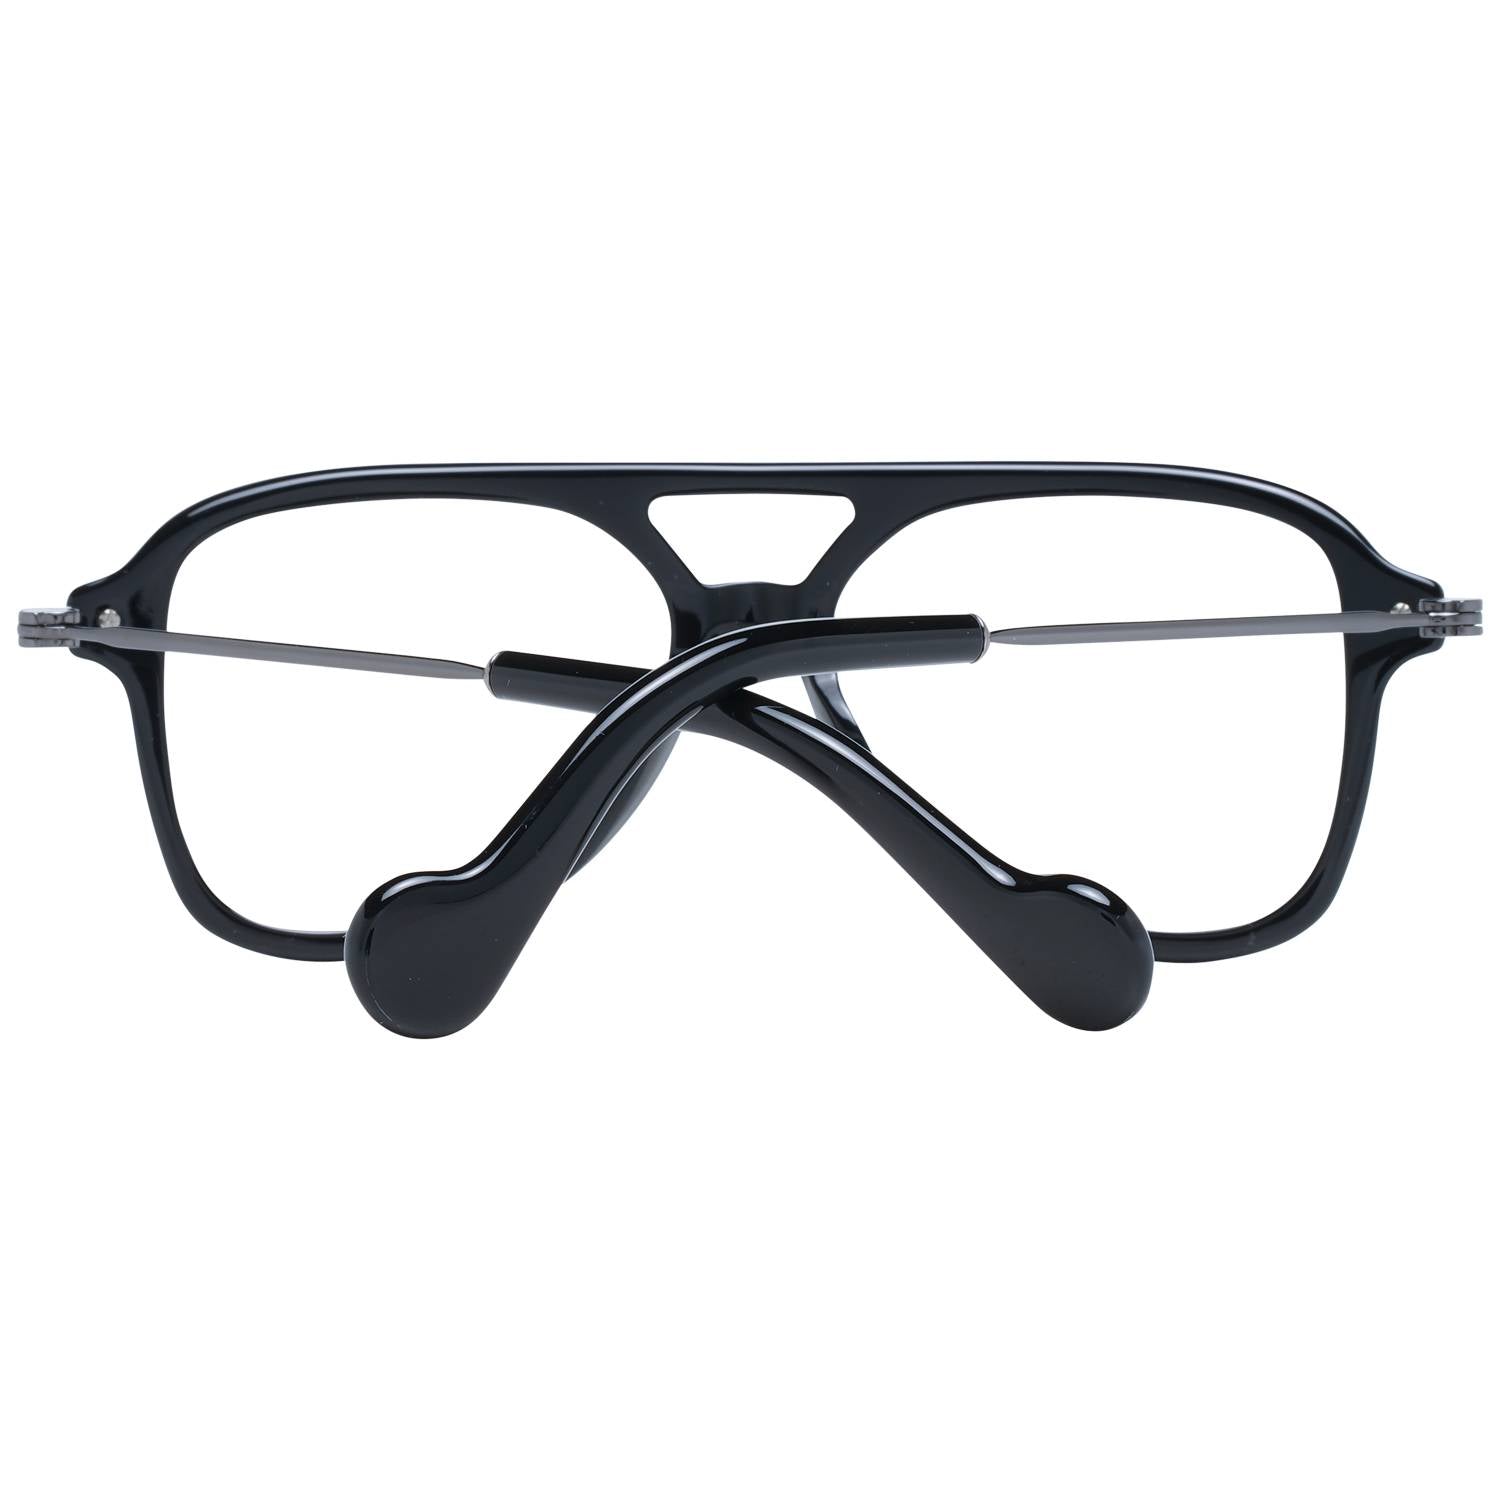 Moncler Eyeglasses Moncler Glasses Frames ML5081 001 56mm Eyeglasses Eyewear UK USA Australia 